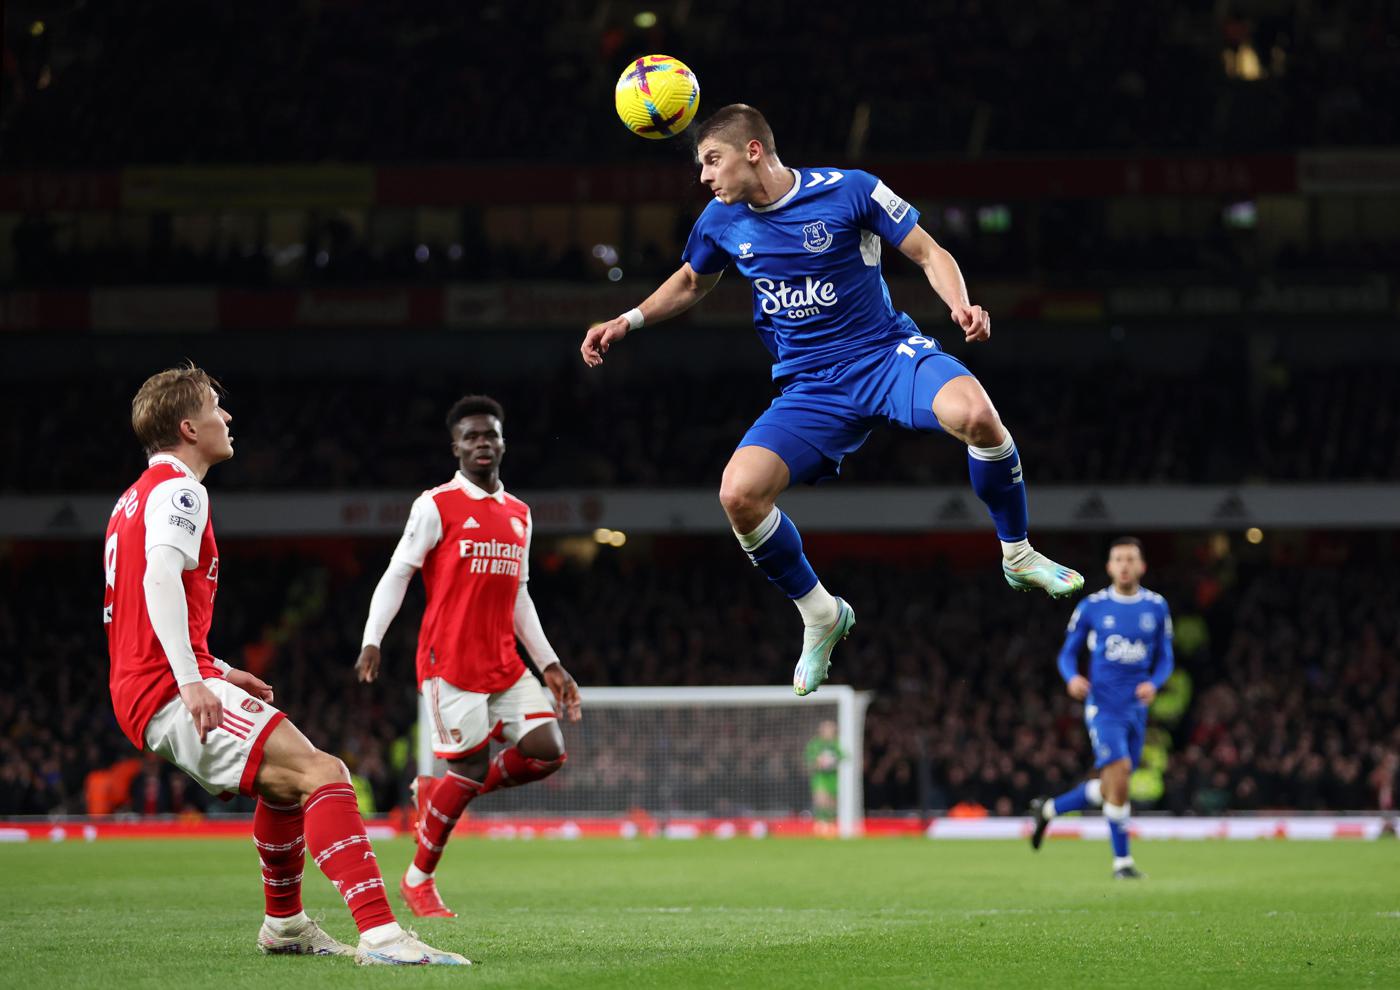 Arsenal gegen Everton - 4-0. Englische Meisterschaft, Runde 7. Spielbericht, Statistik